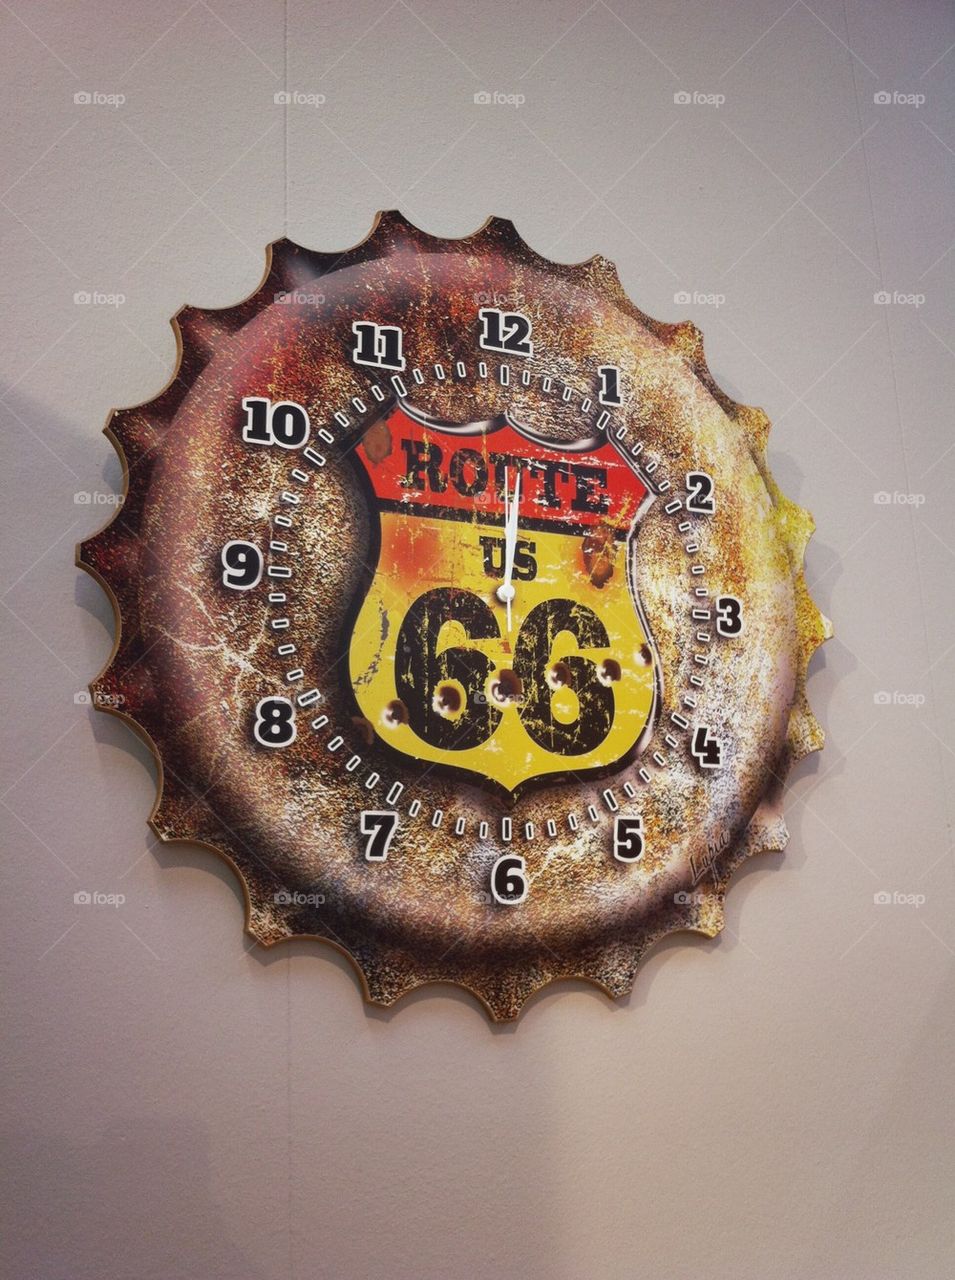 Route 66 clock